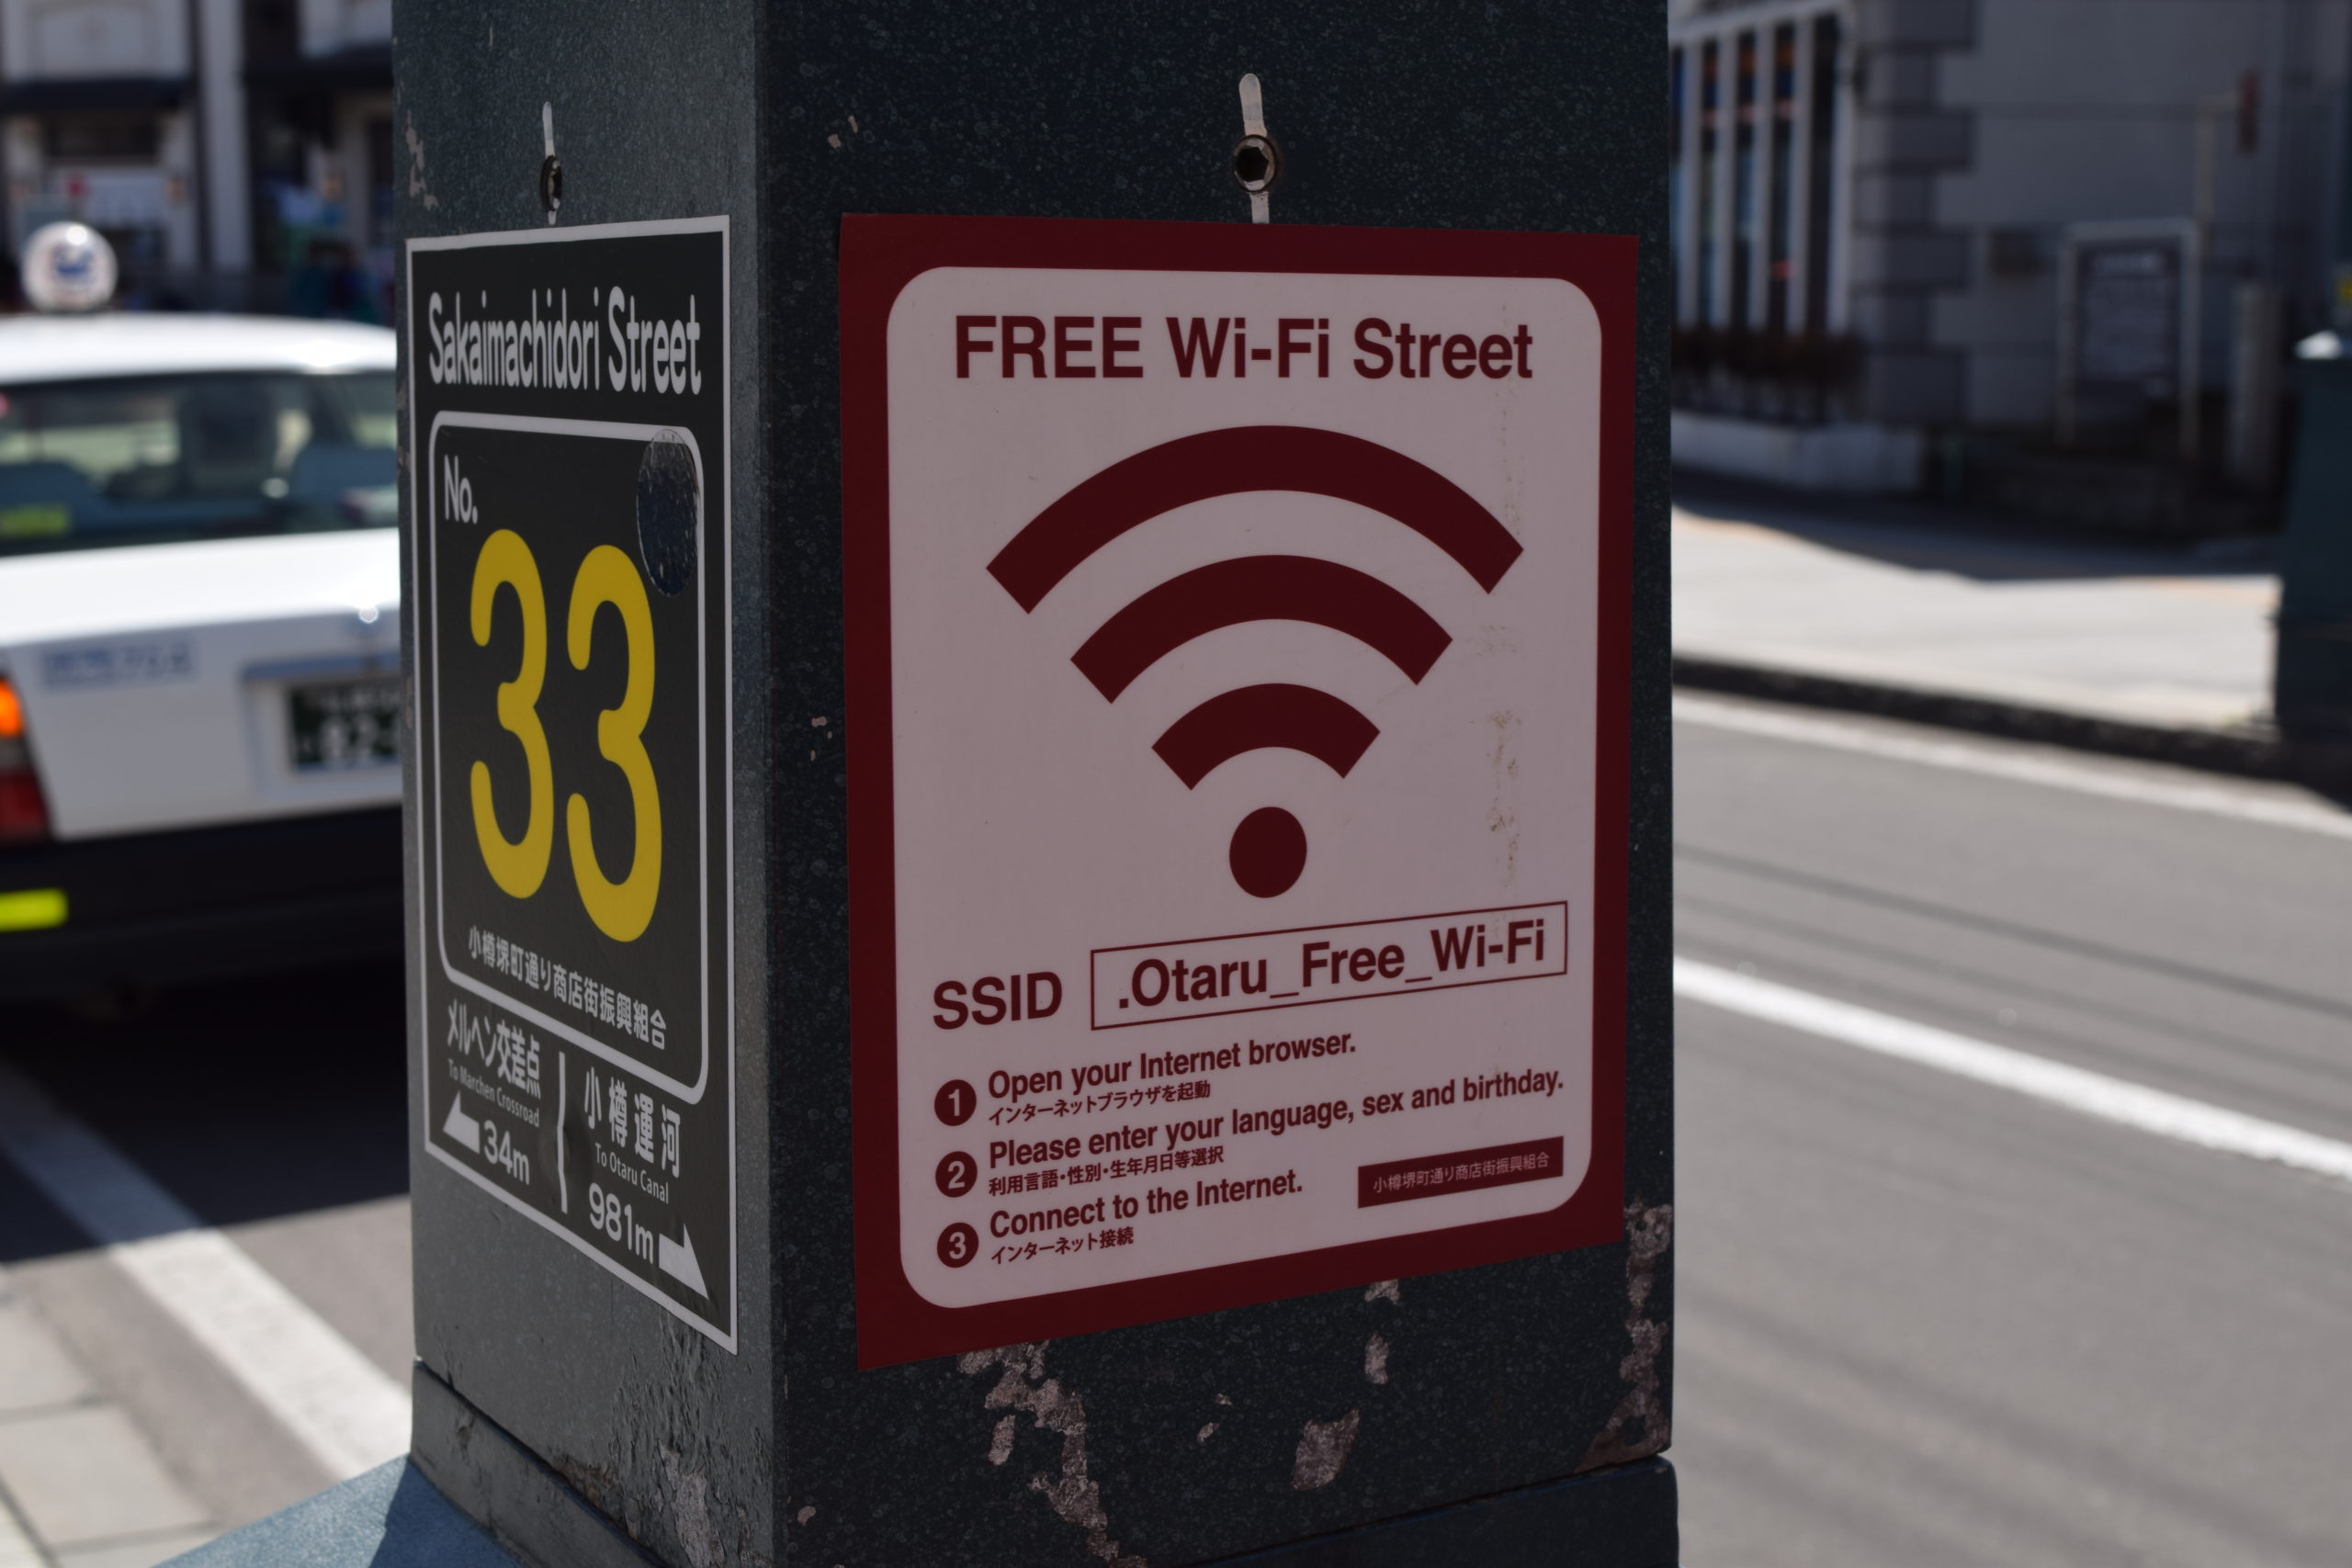 小樽堺町通りで利用できる無料Wi-Fi「.Otaru_Free_Wi-Fi」の設定方法と接続手順